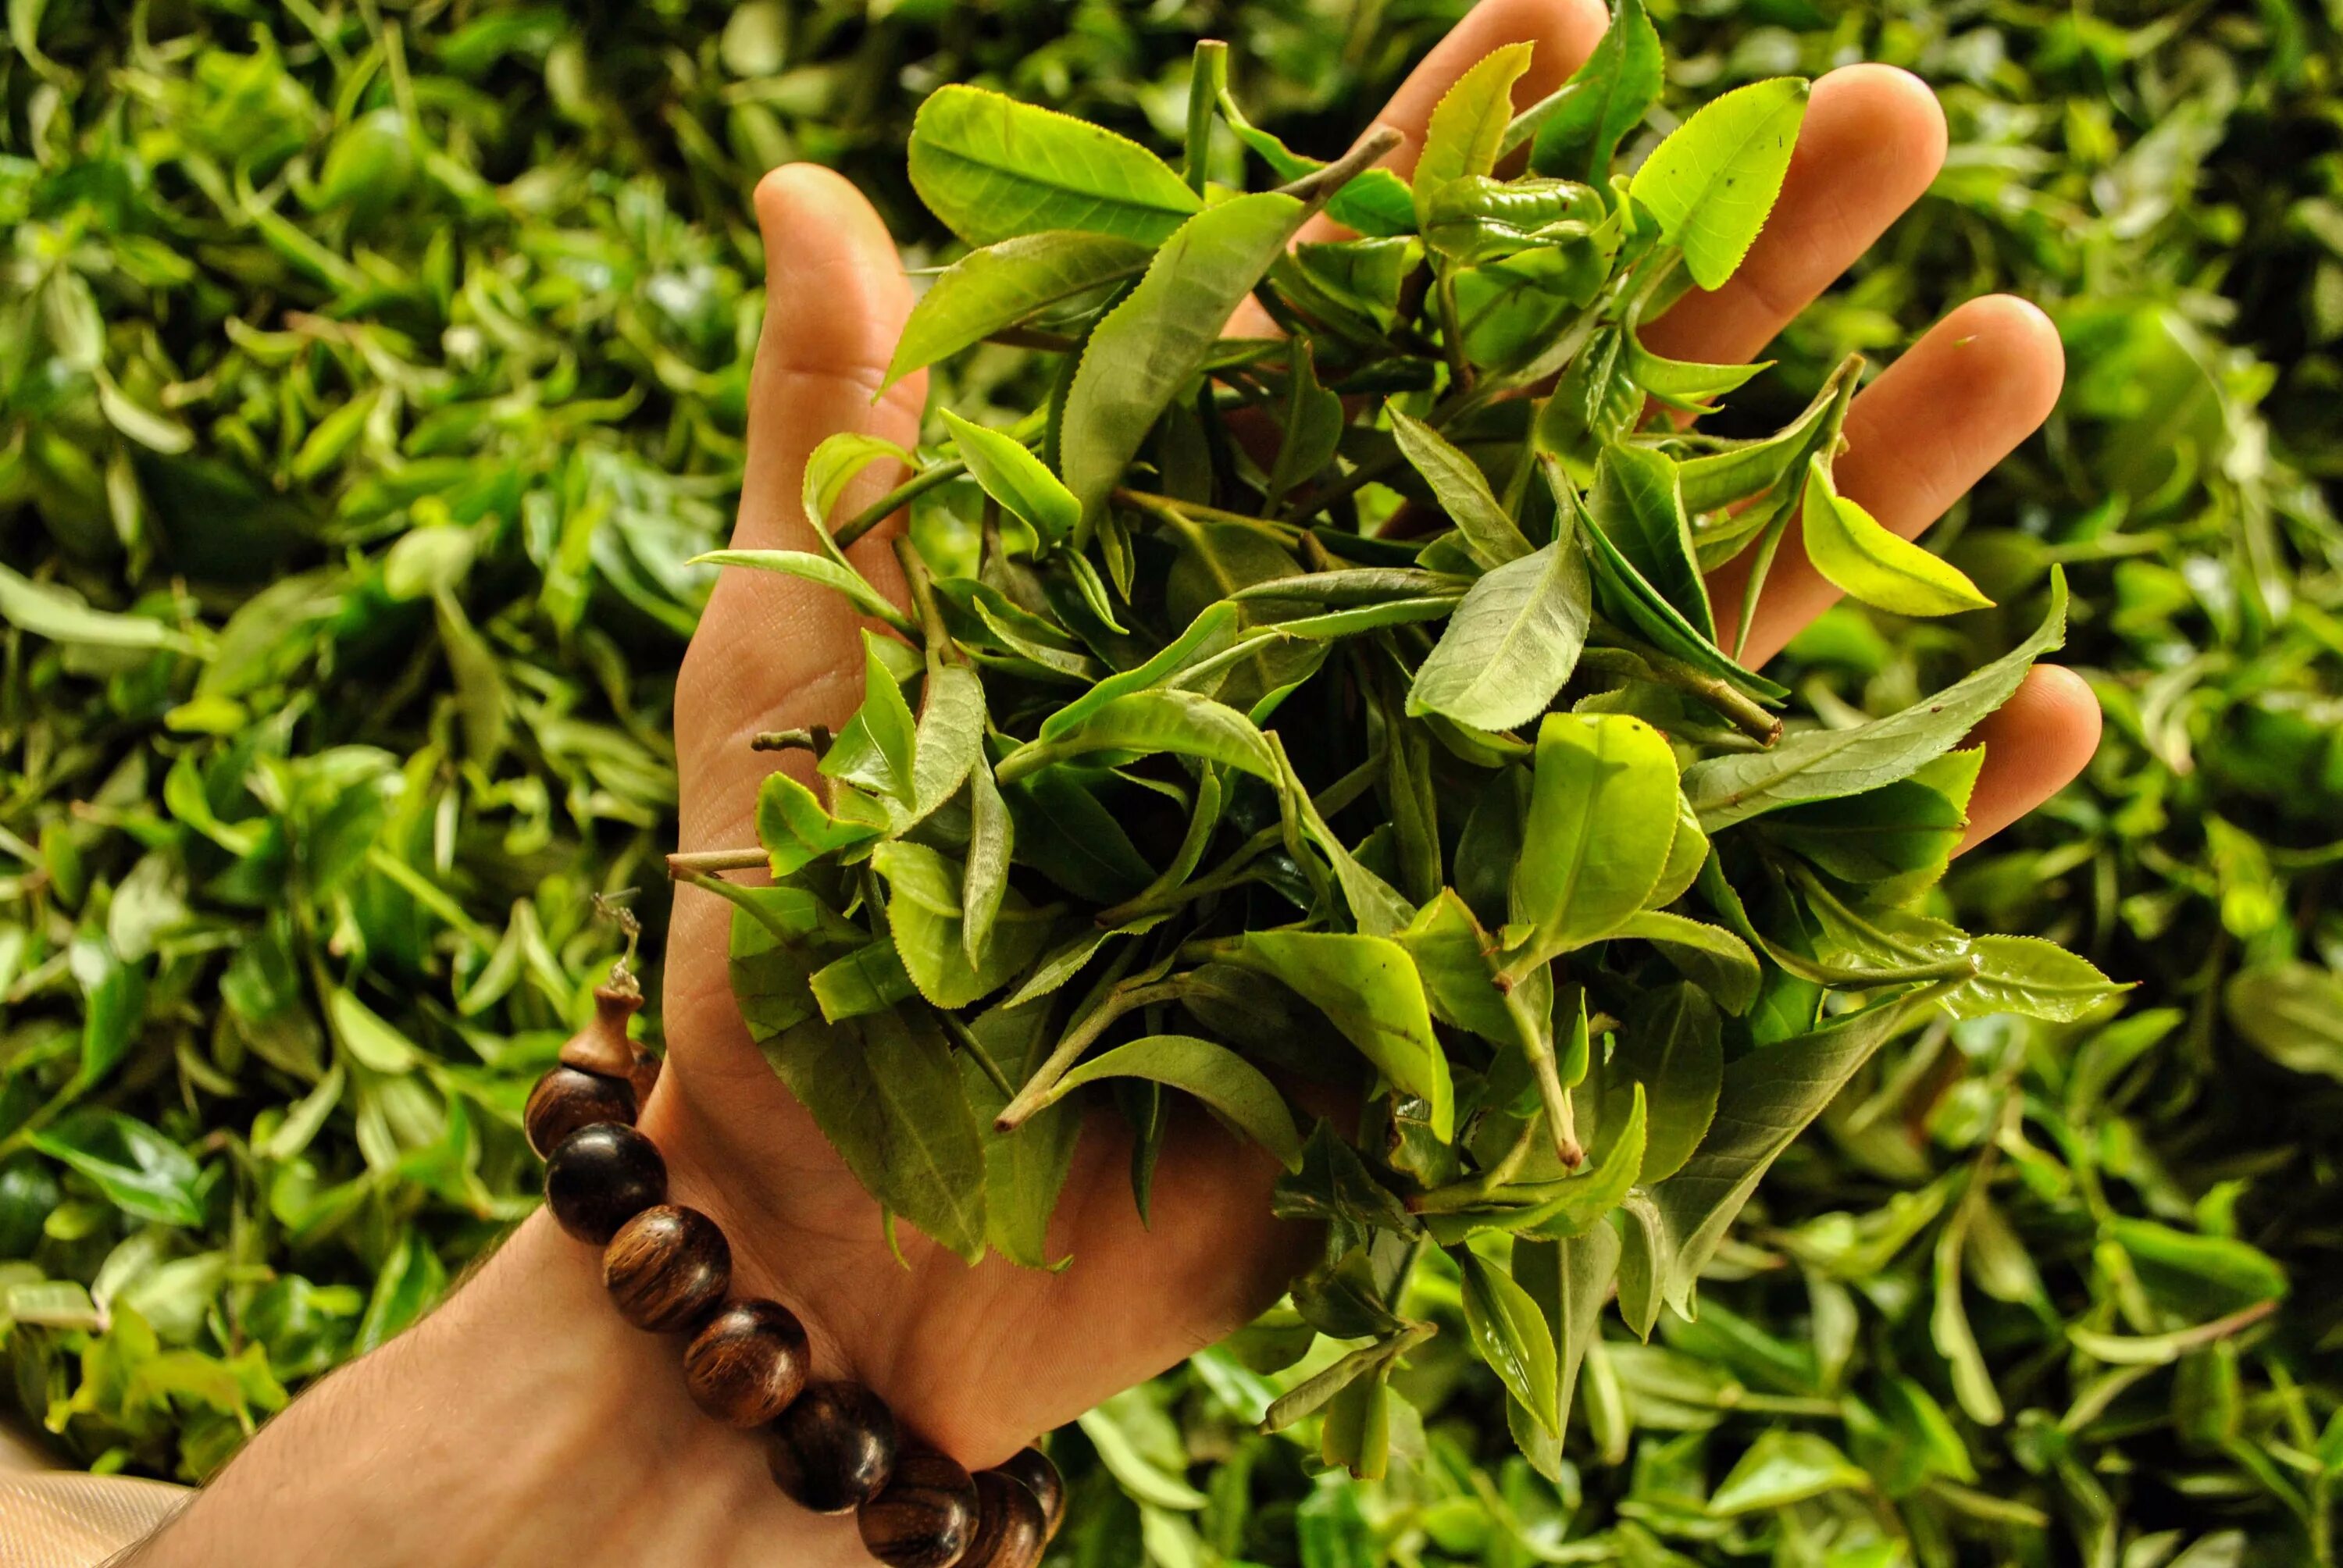 Вреден ли зеленый. Зеленый чай фото трава. Здоровье и польза чая фото. Рексируещие фото без авторских прав растения.